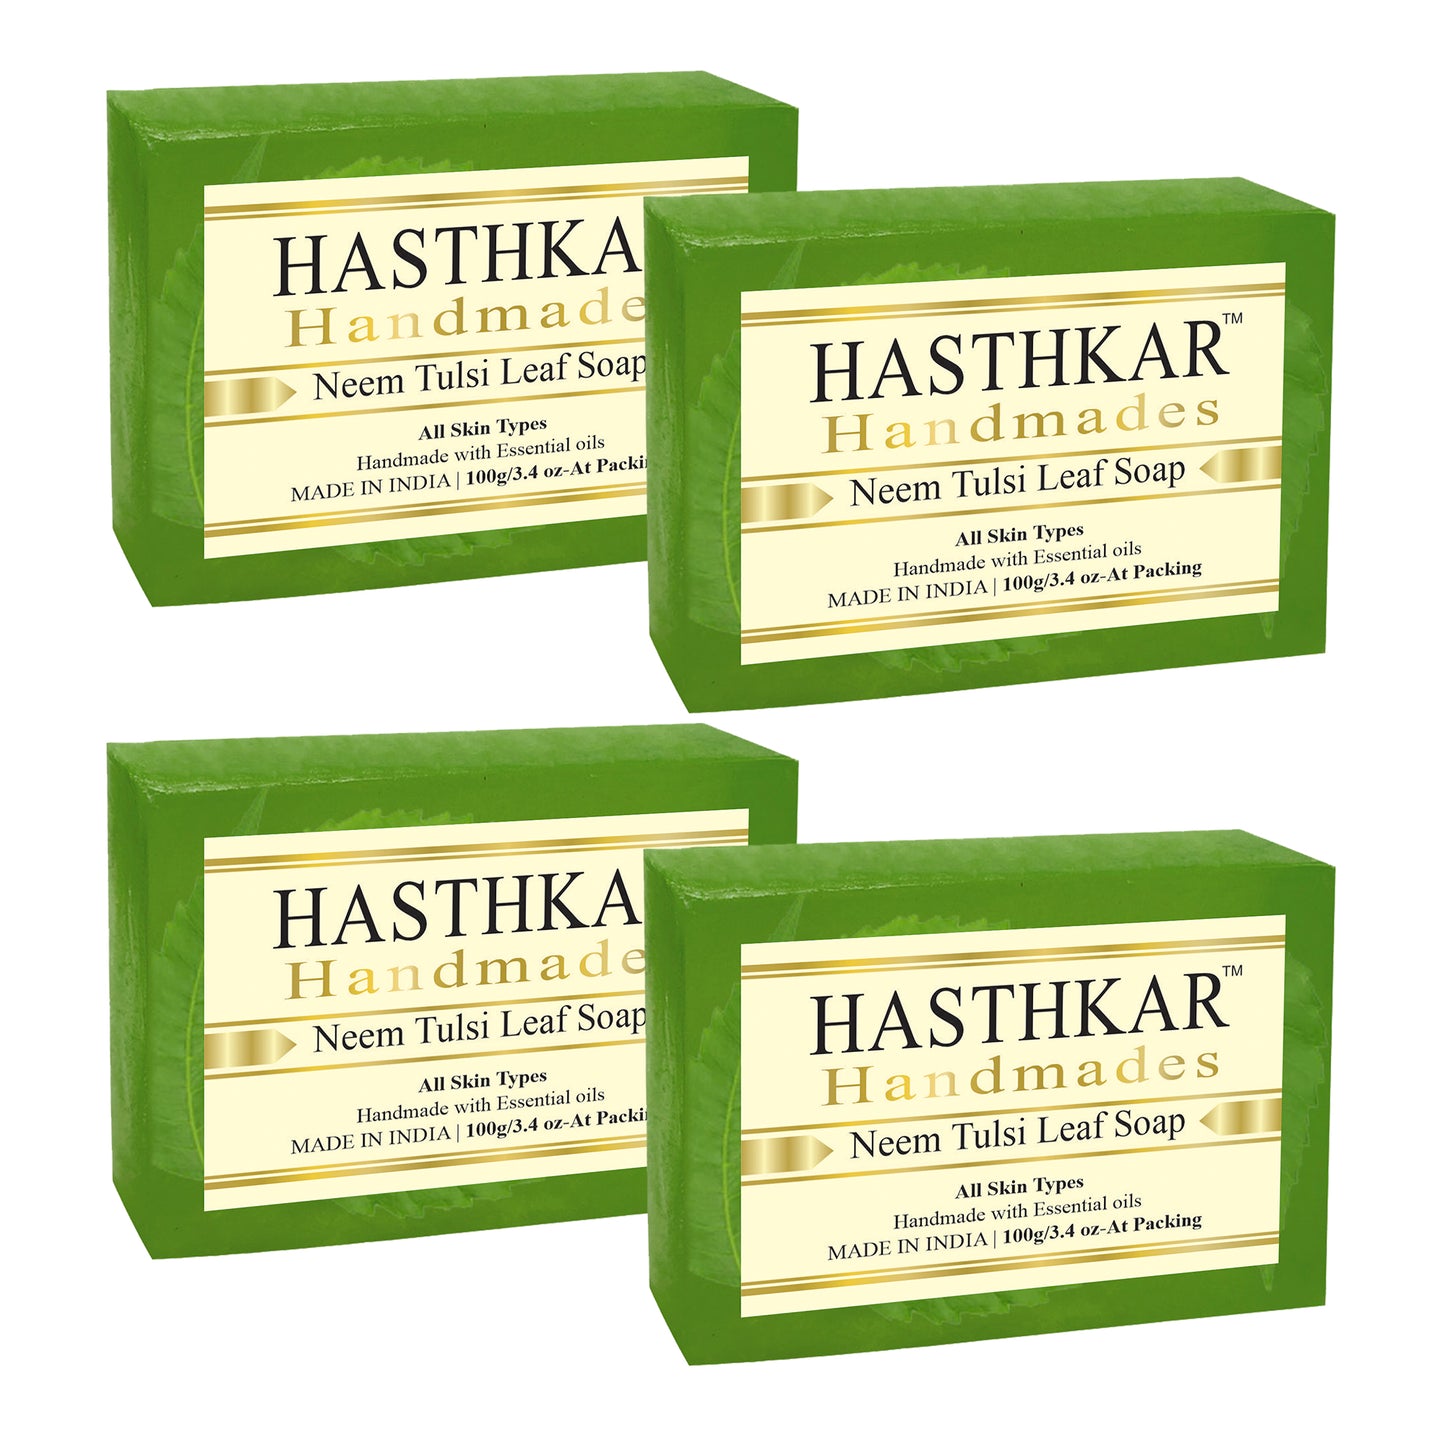 Hasthkar handmades neem tulsi leaf bathing soap men women pack of 4